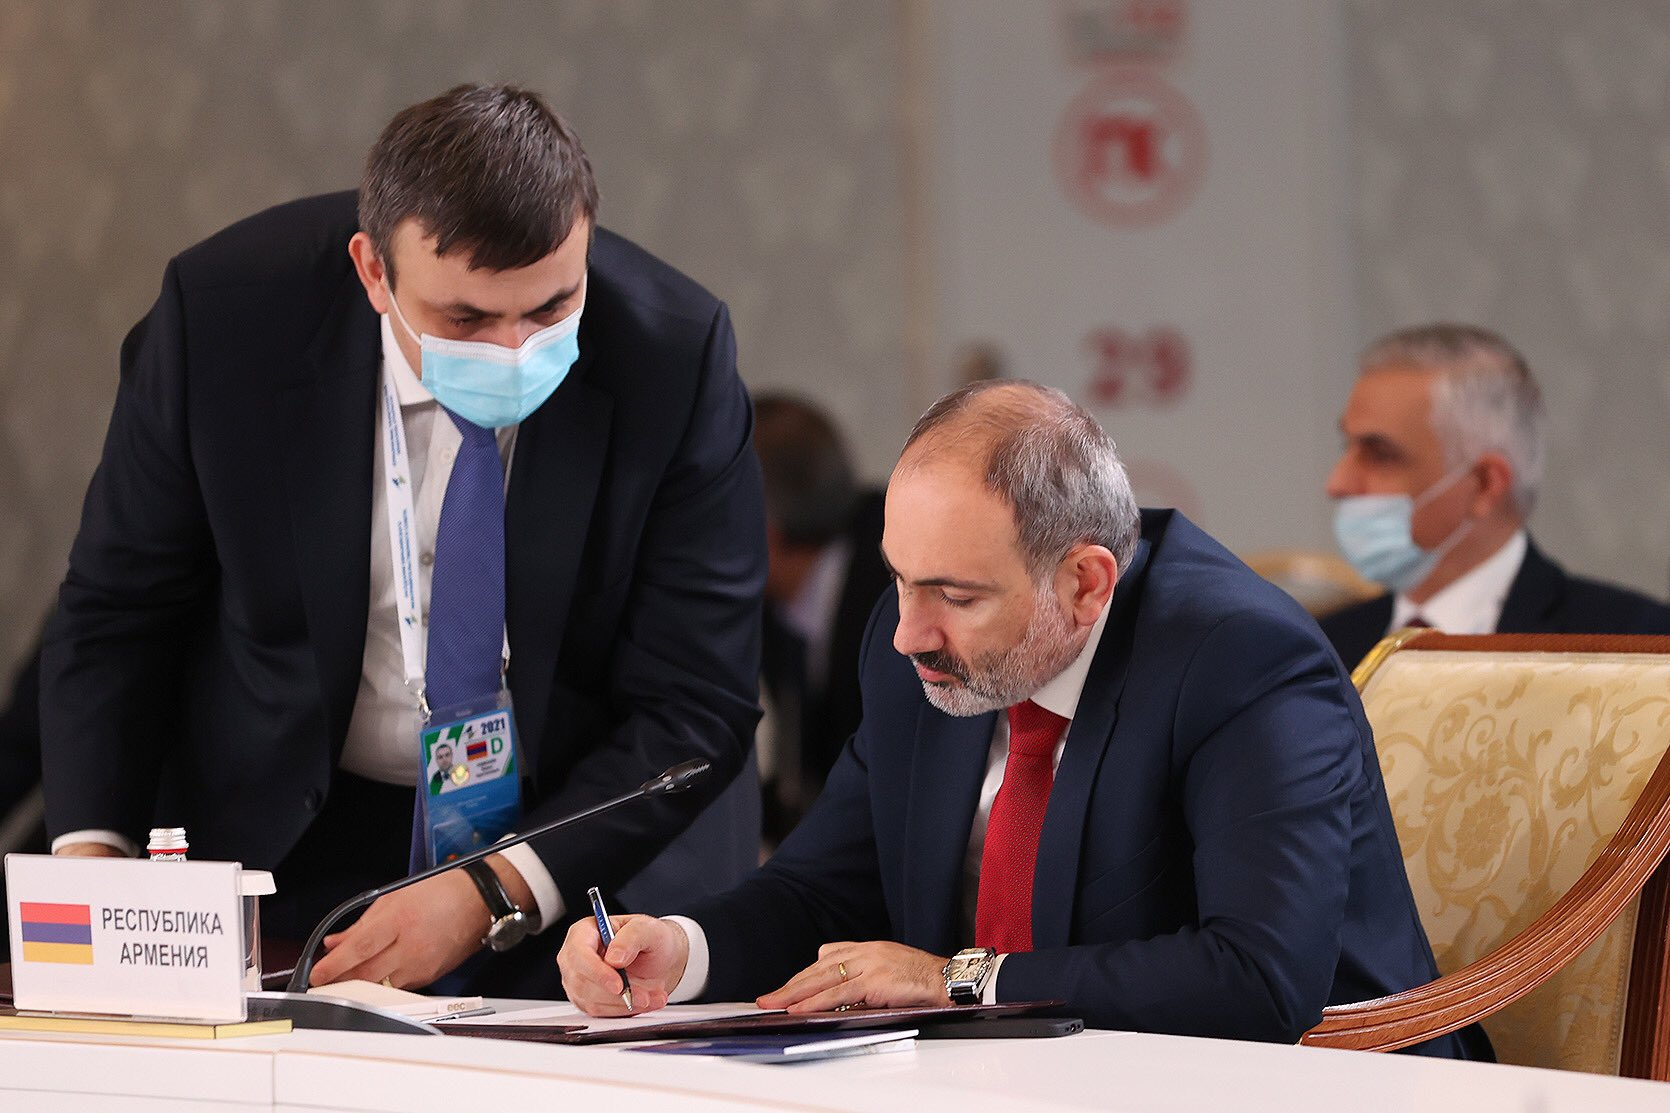 Пашинян заявил о готовности установить отношения с Баку по предложенным РФ принципам